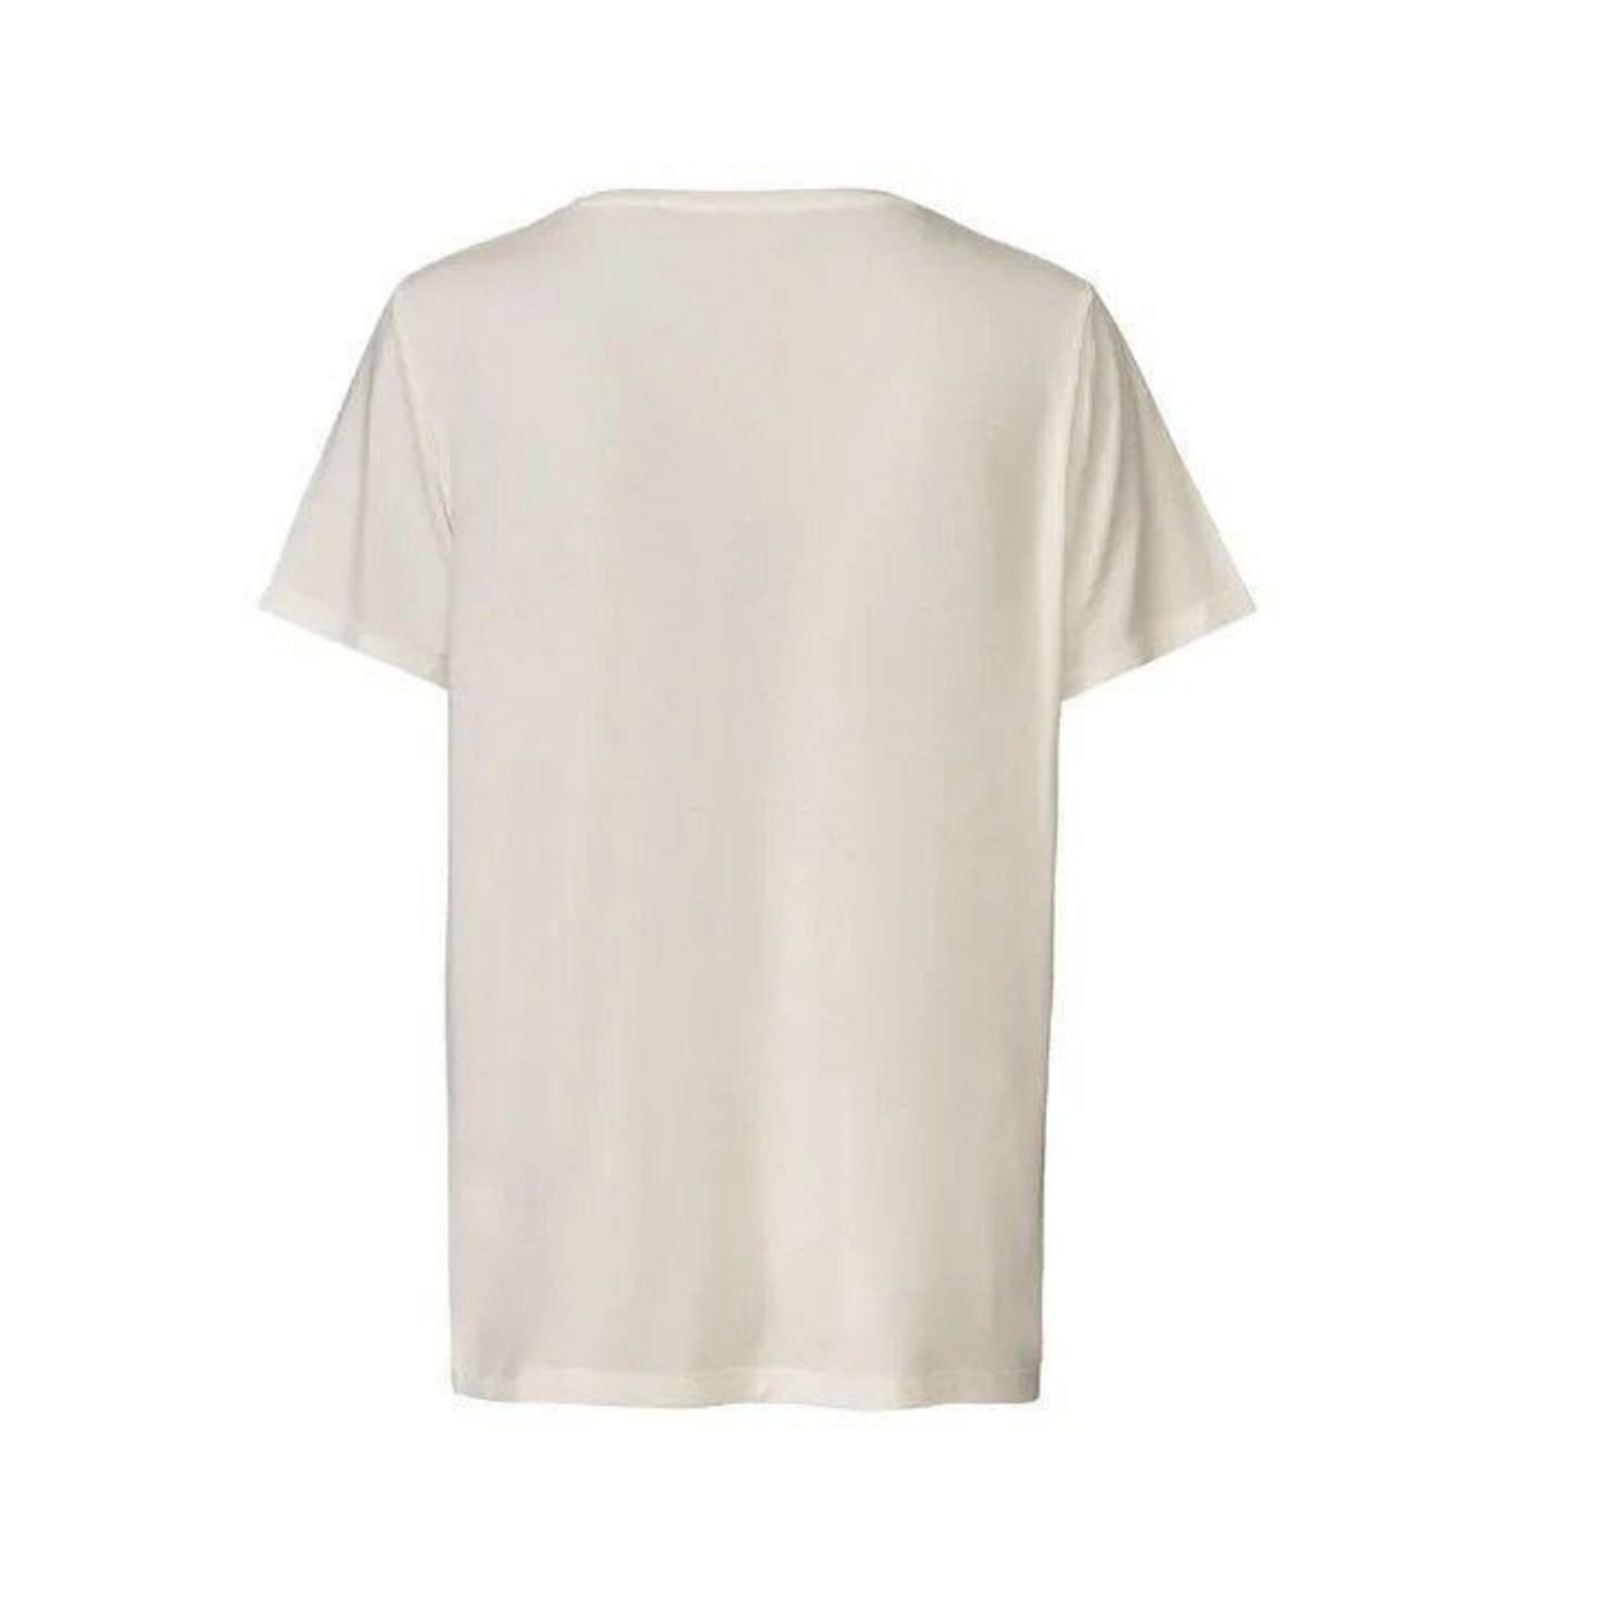 تی شرت آستین کوتاه زنانه اسمارا مدل IAN 313594 -  - 2